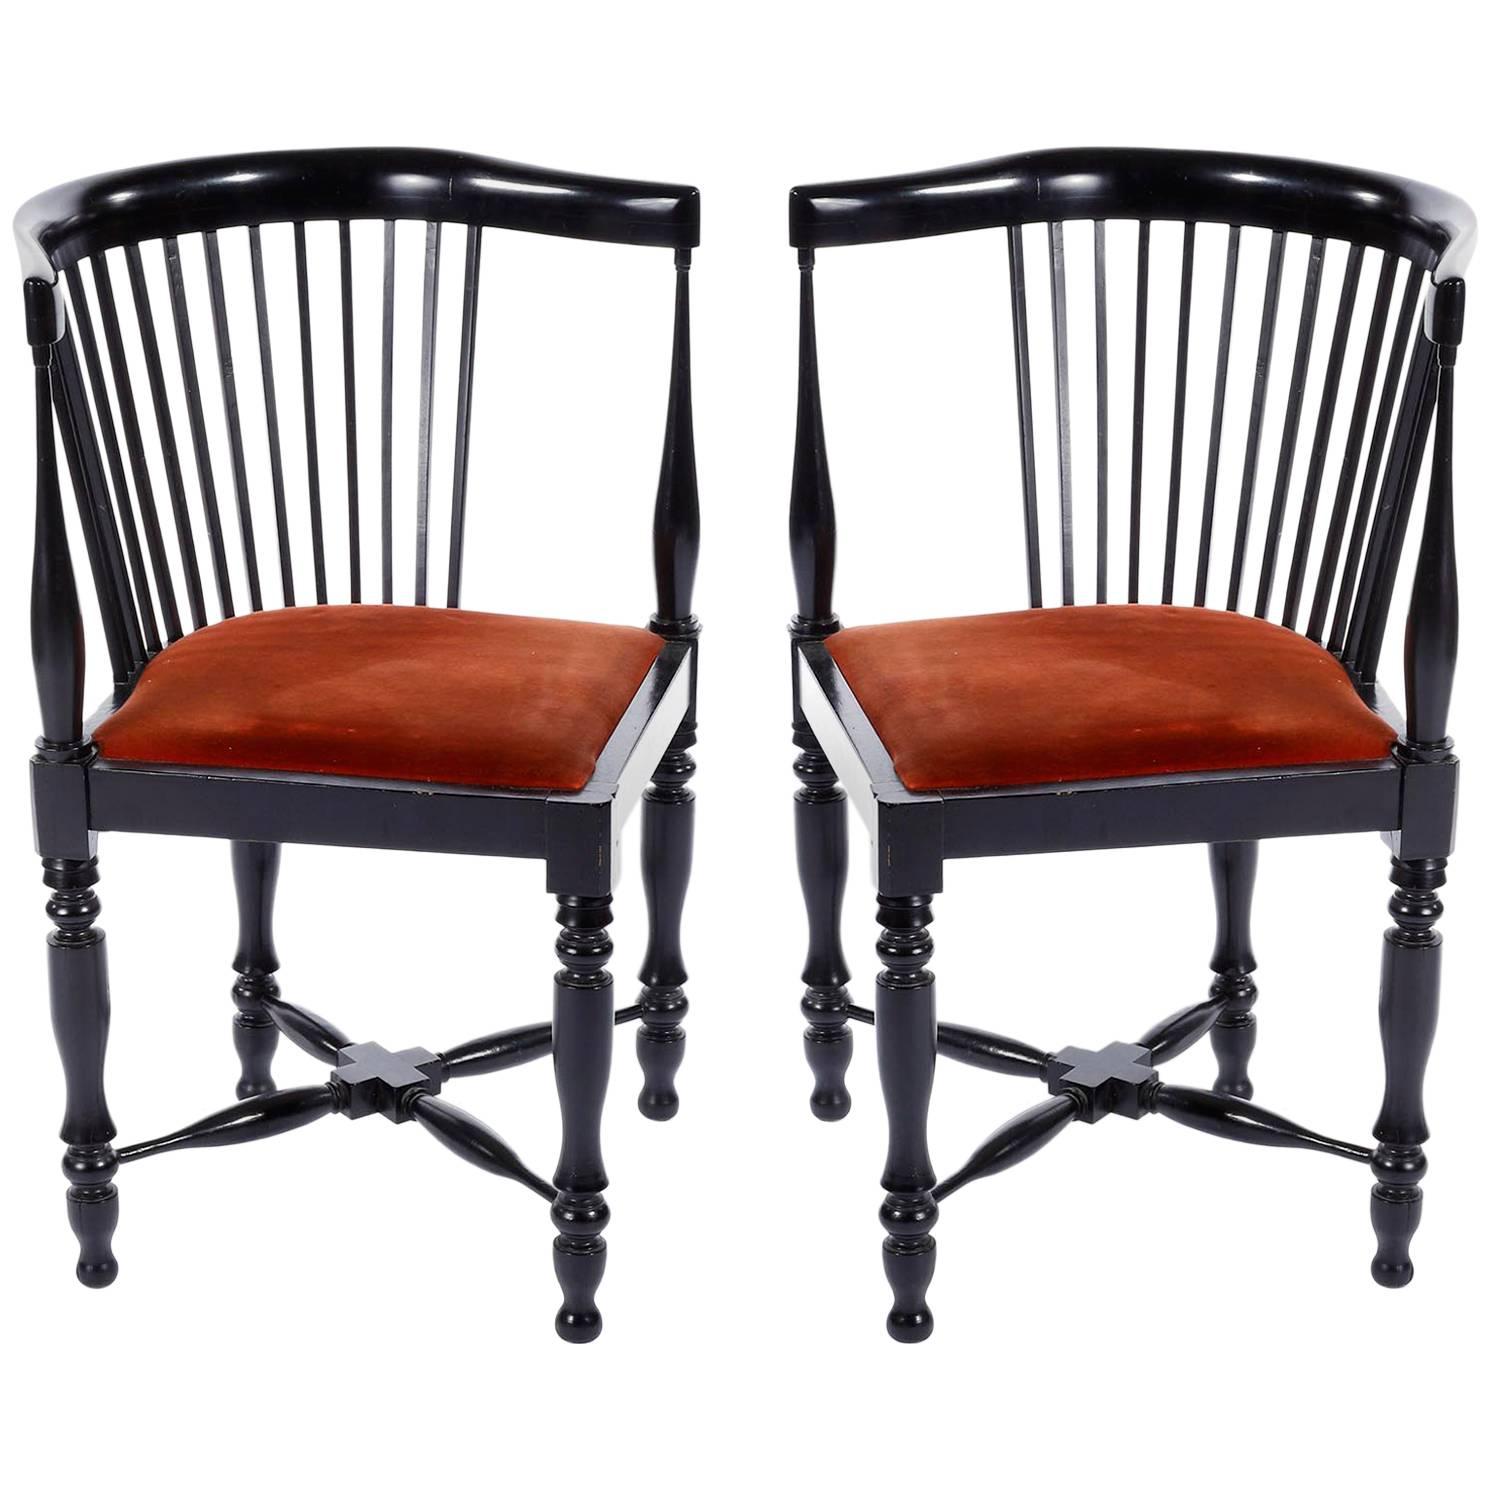 Adolf Loos Corner Chairs, F.O. Schmidt, Velvet Wood, Jugendstil, 1898-1900, Pair